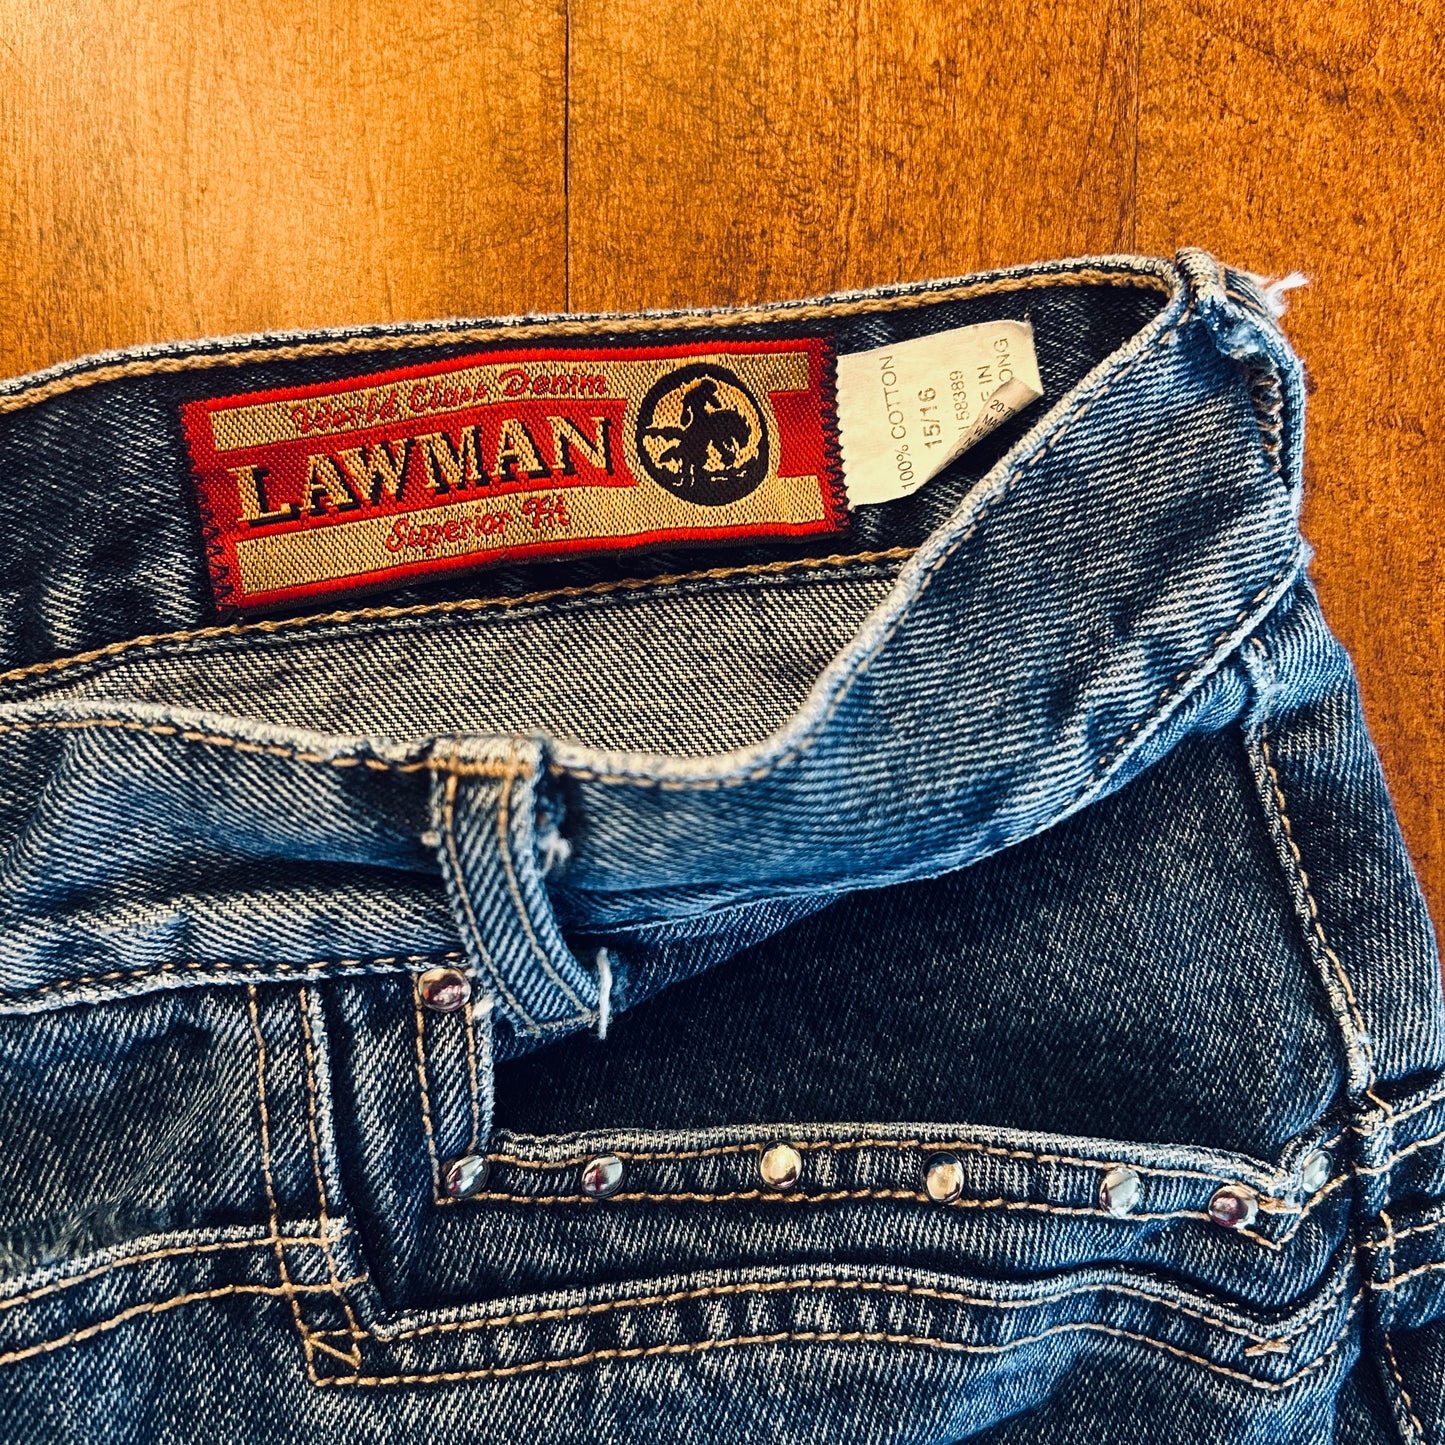 Lawman Bareback Jean Shorts Size 35